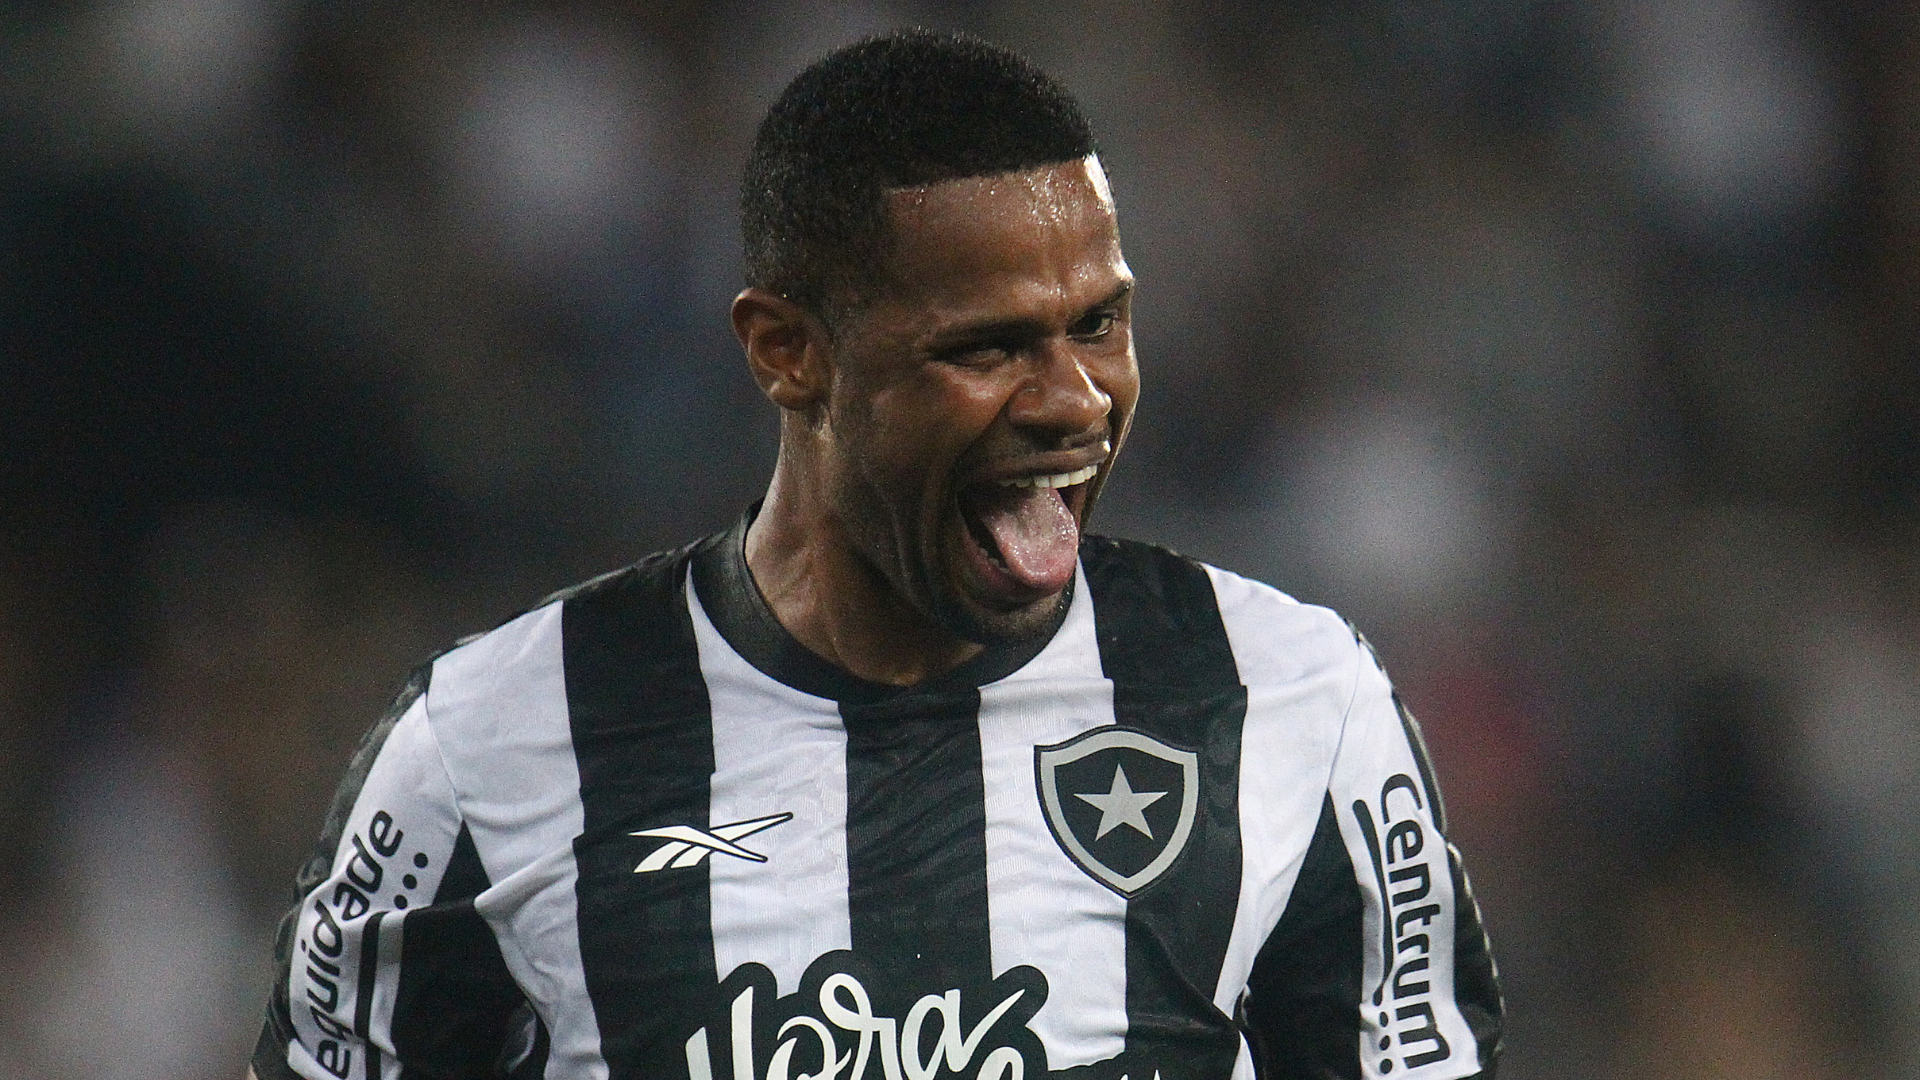 Libertadores: Botafogo enfrenta Júnior Barranquilla nesta quarta (03), às 19h, no estádio Nilton Santos